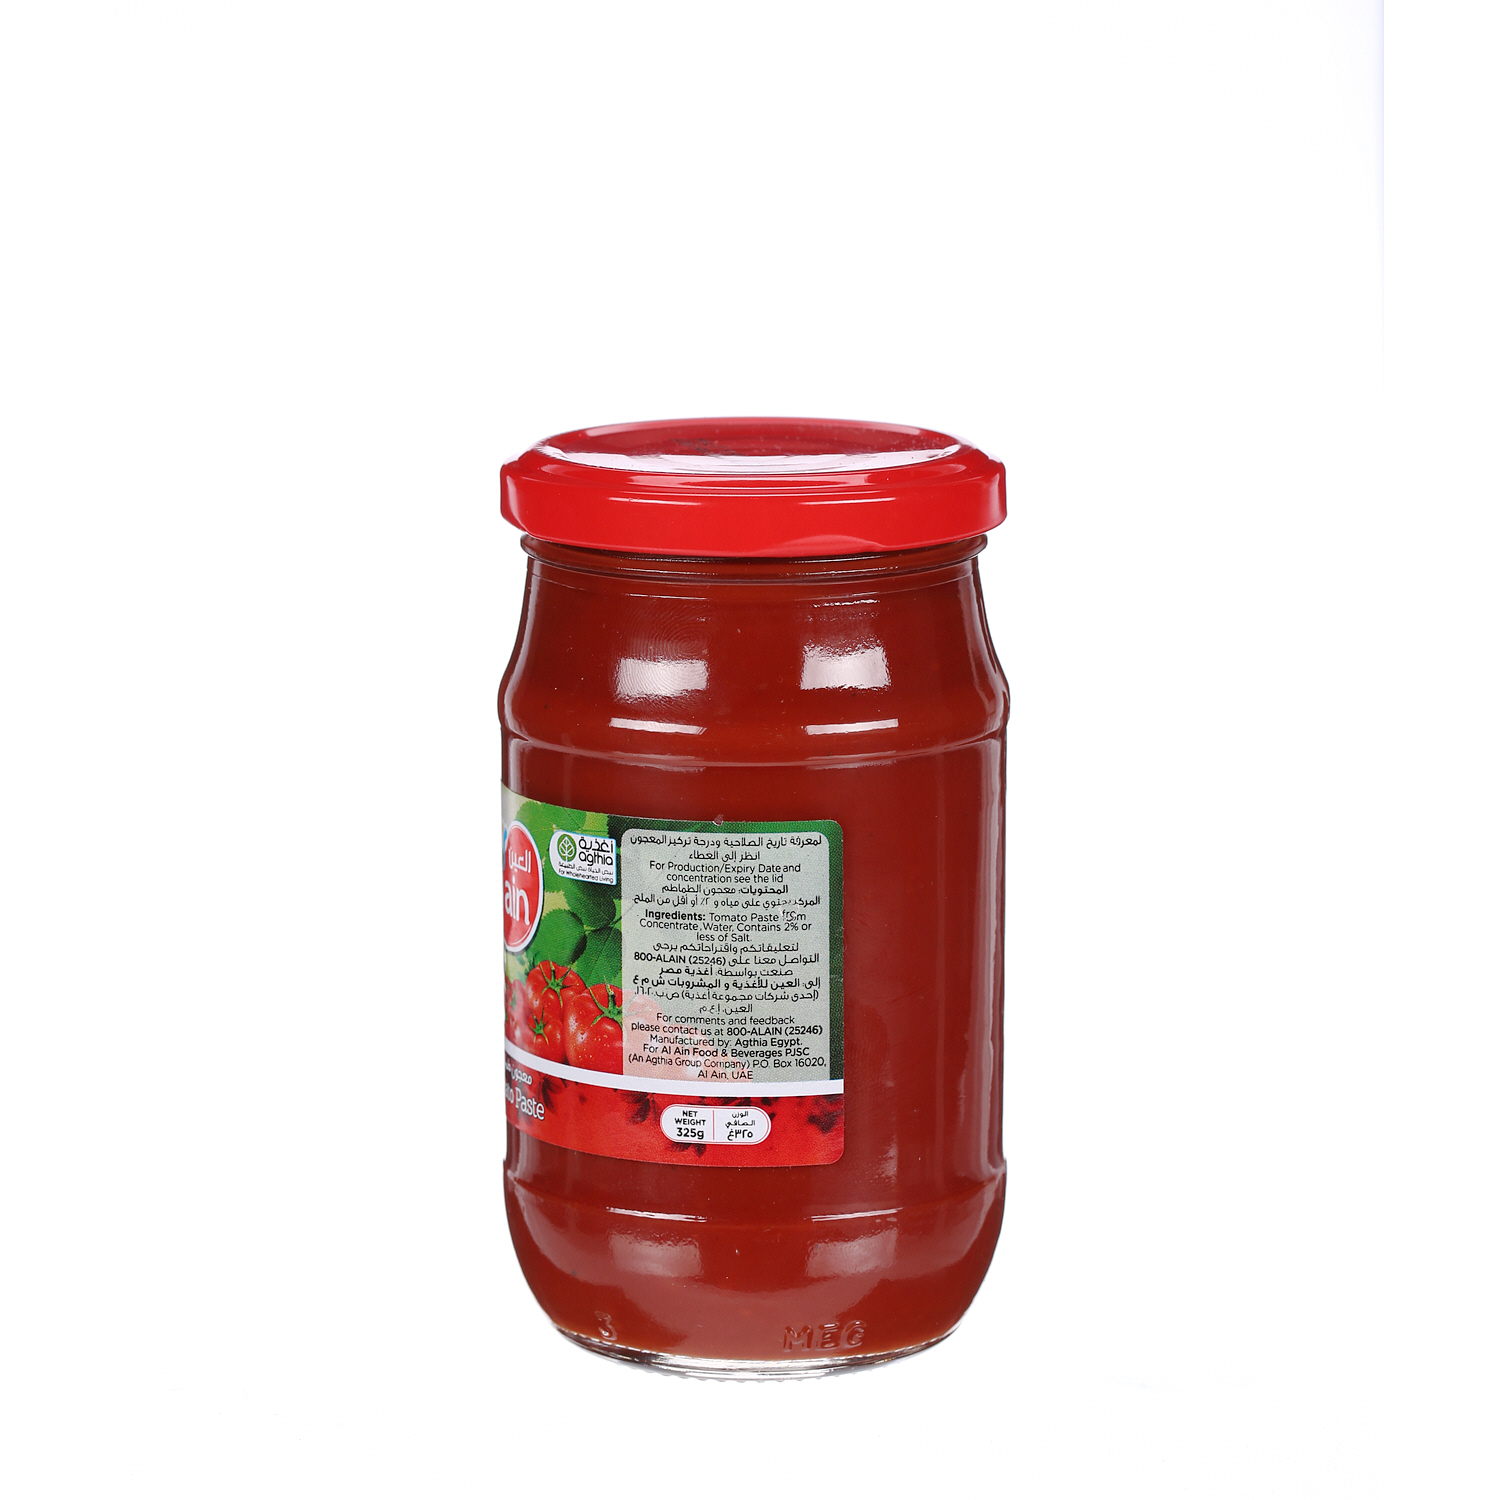 Al Ain Tomato Paste 325 g